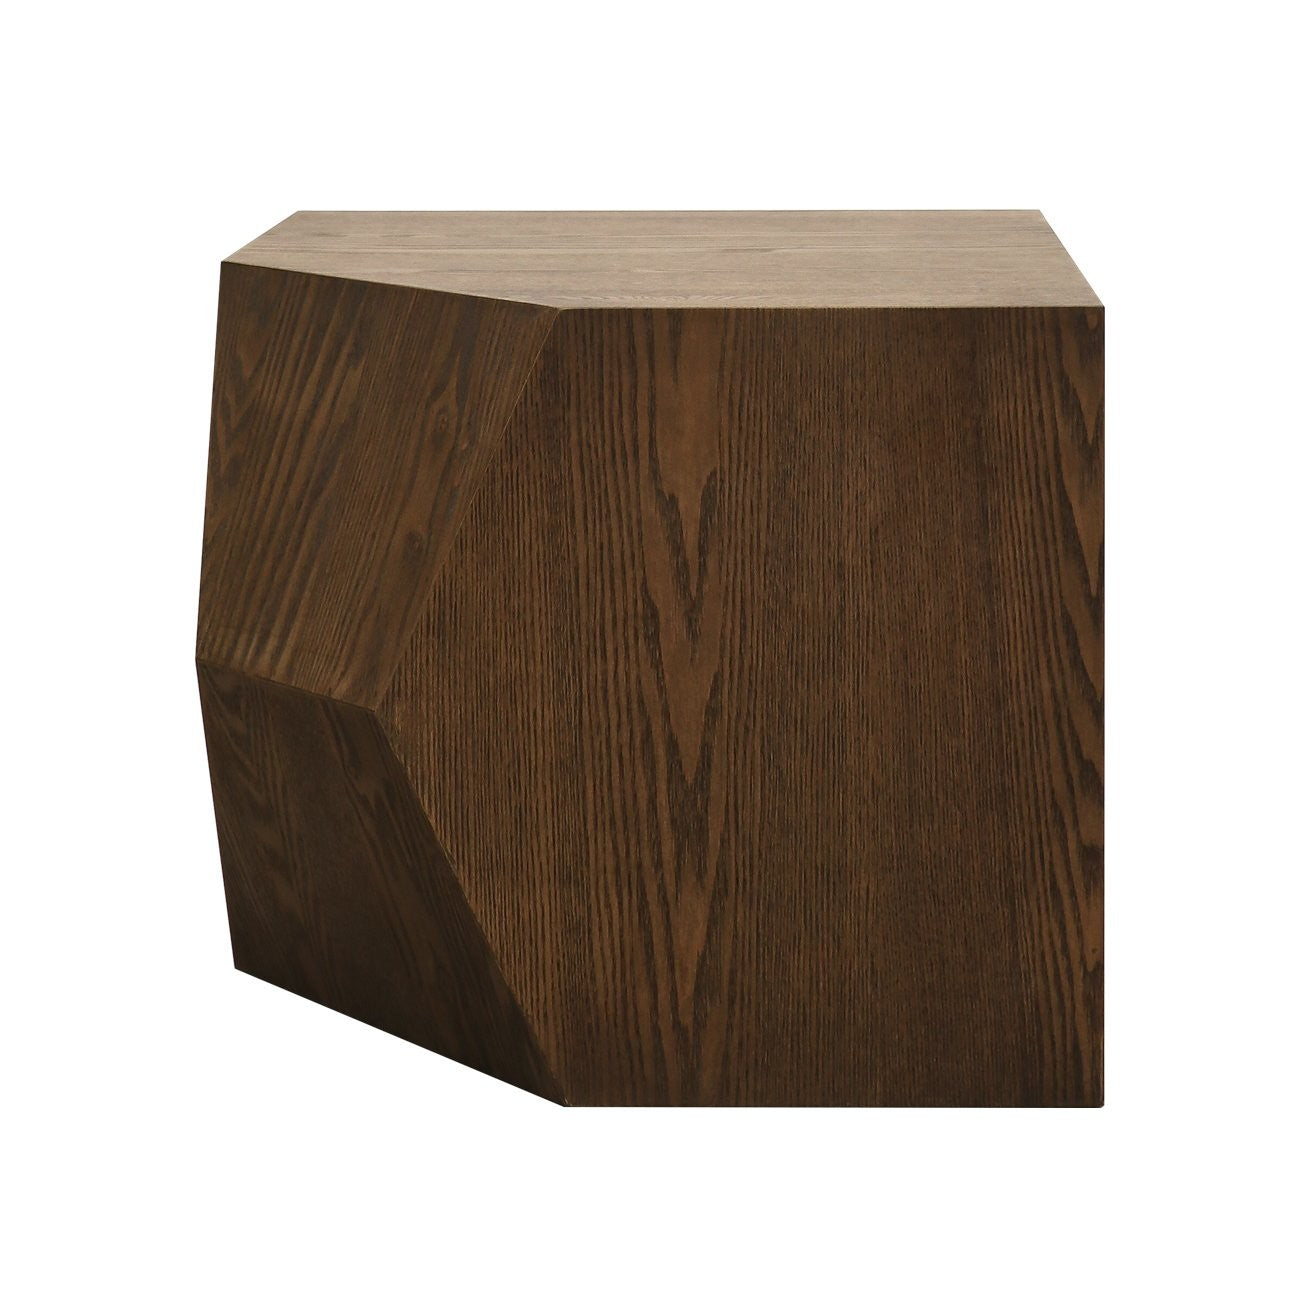 Alto modular coffee table
